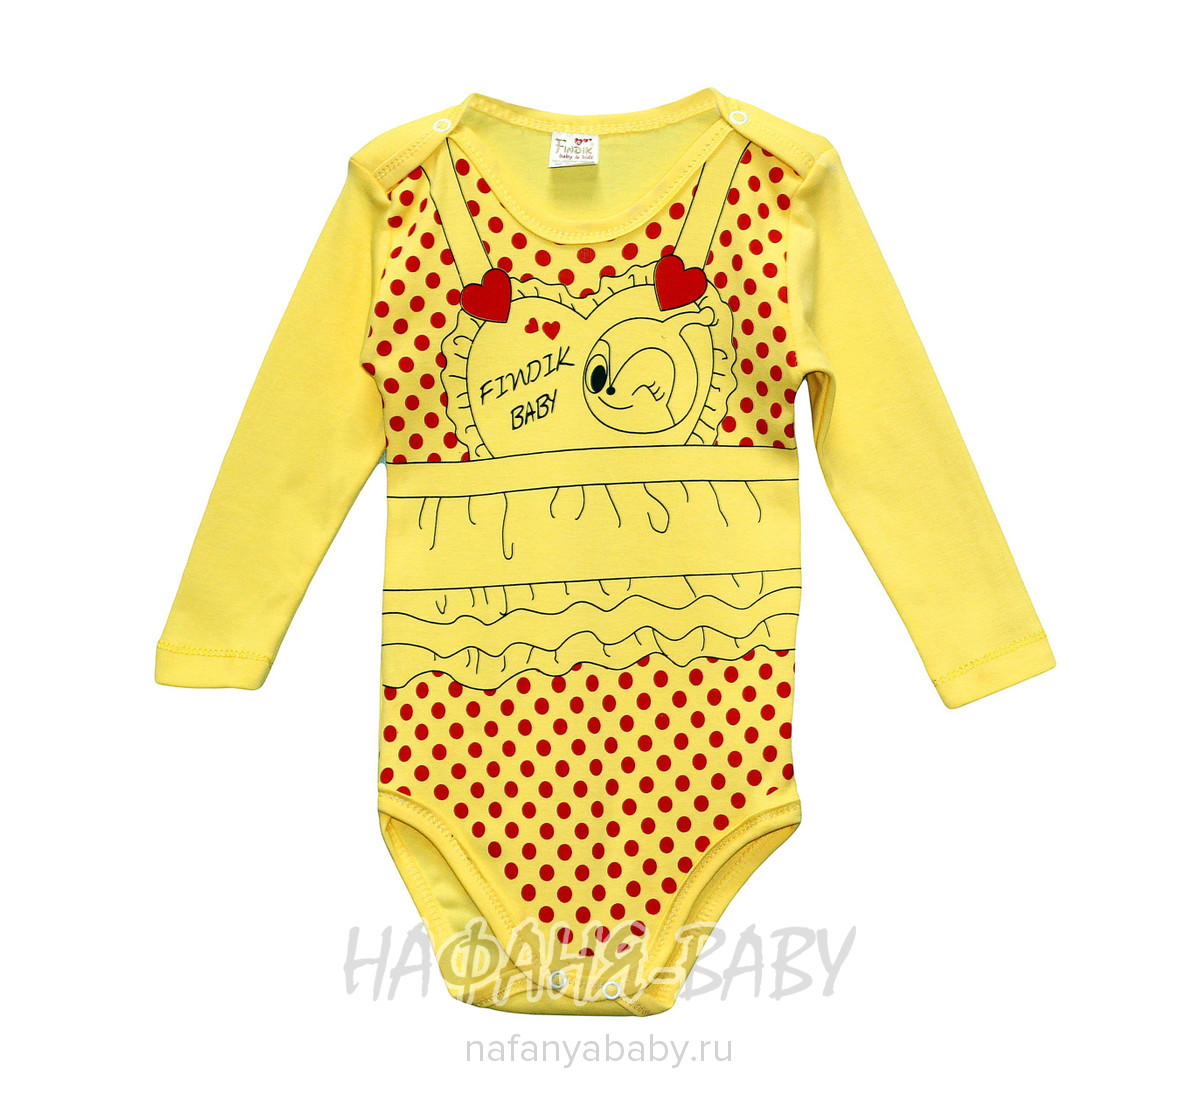 Детские боди для новорожденных FINDIK арт: 12393, 1-4 года, 0-12 мес, цвет желтый, оптом Турция